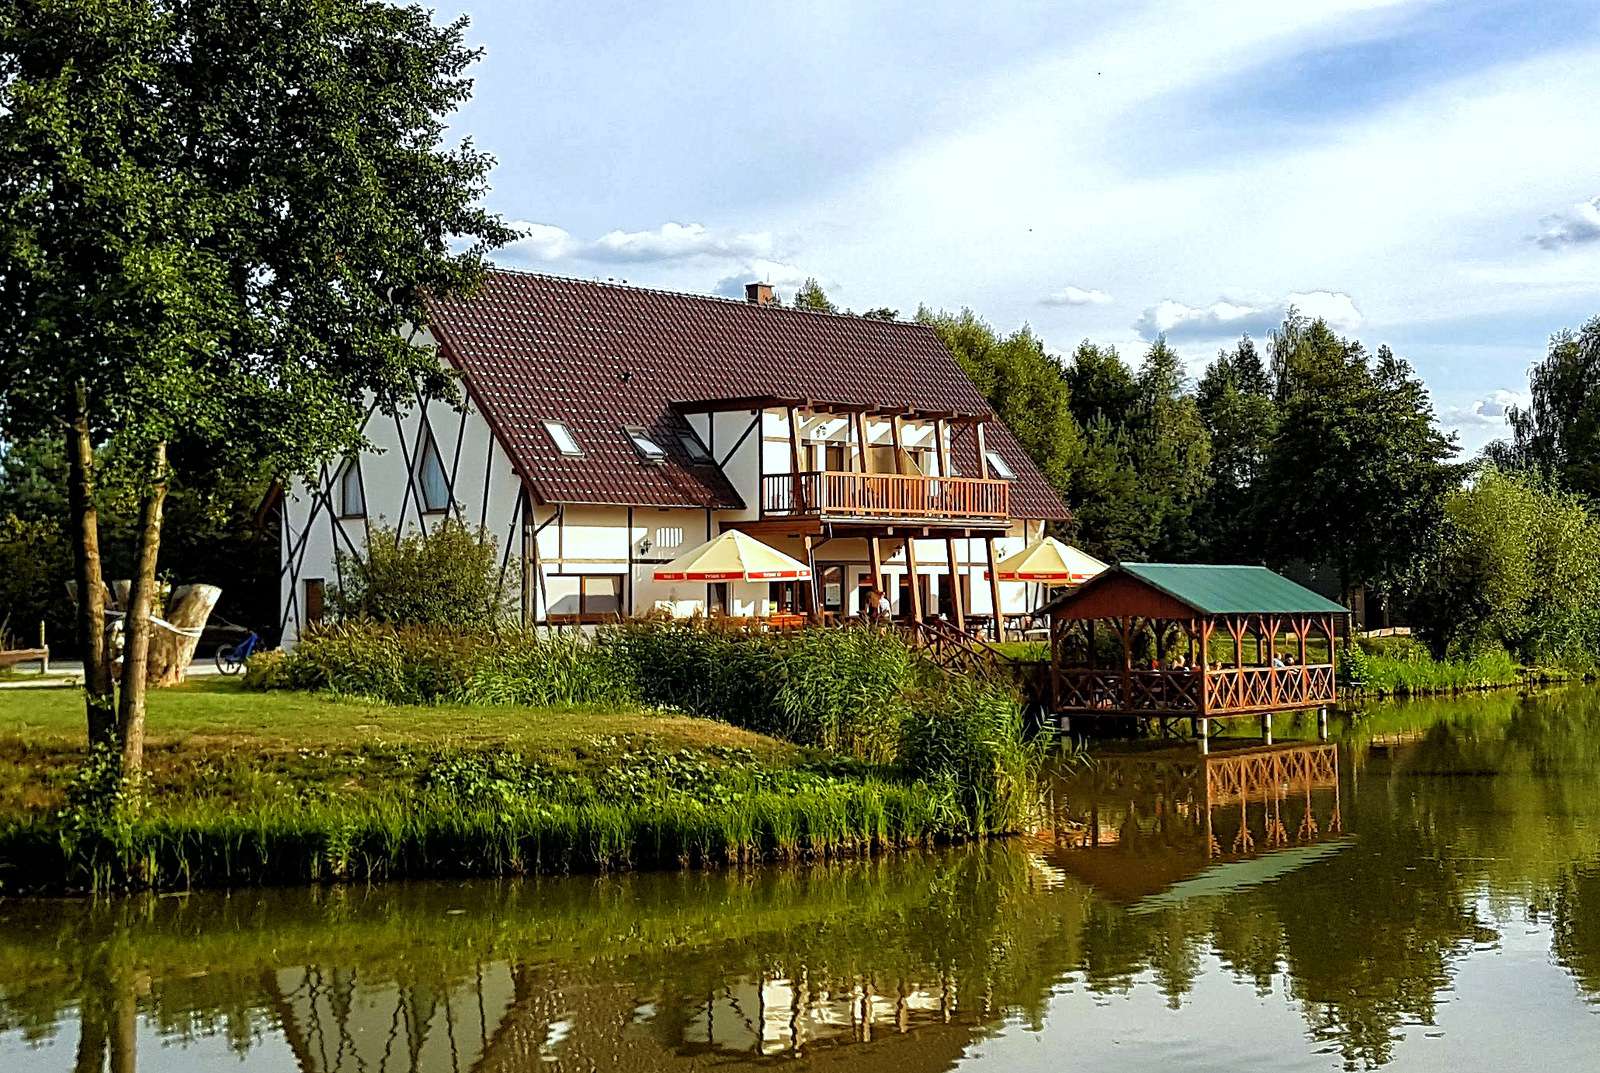 Σπίτι δίπλα στη λίμνη (Cieszków, Πολωνία) παζλ online